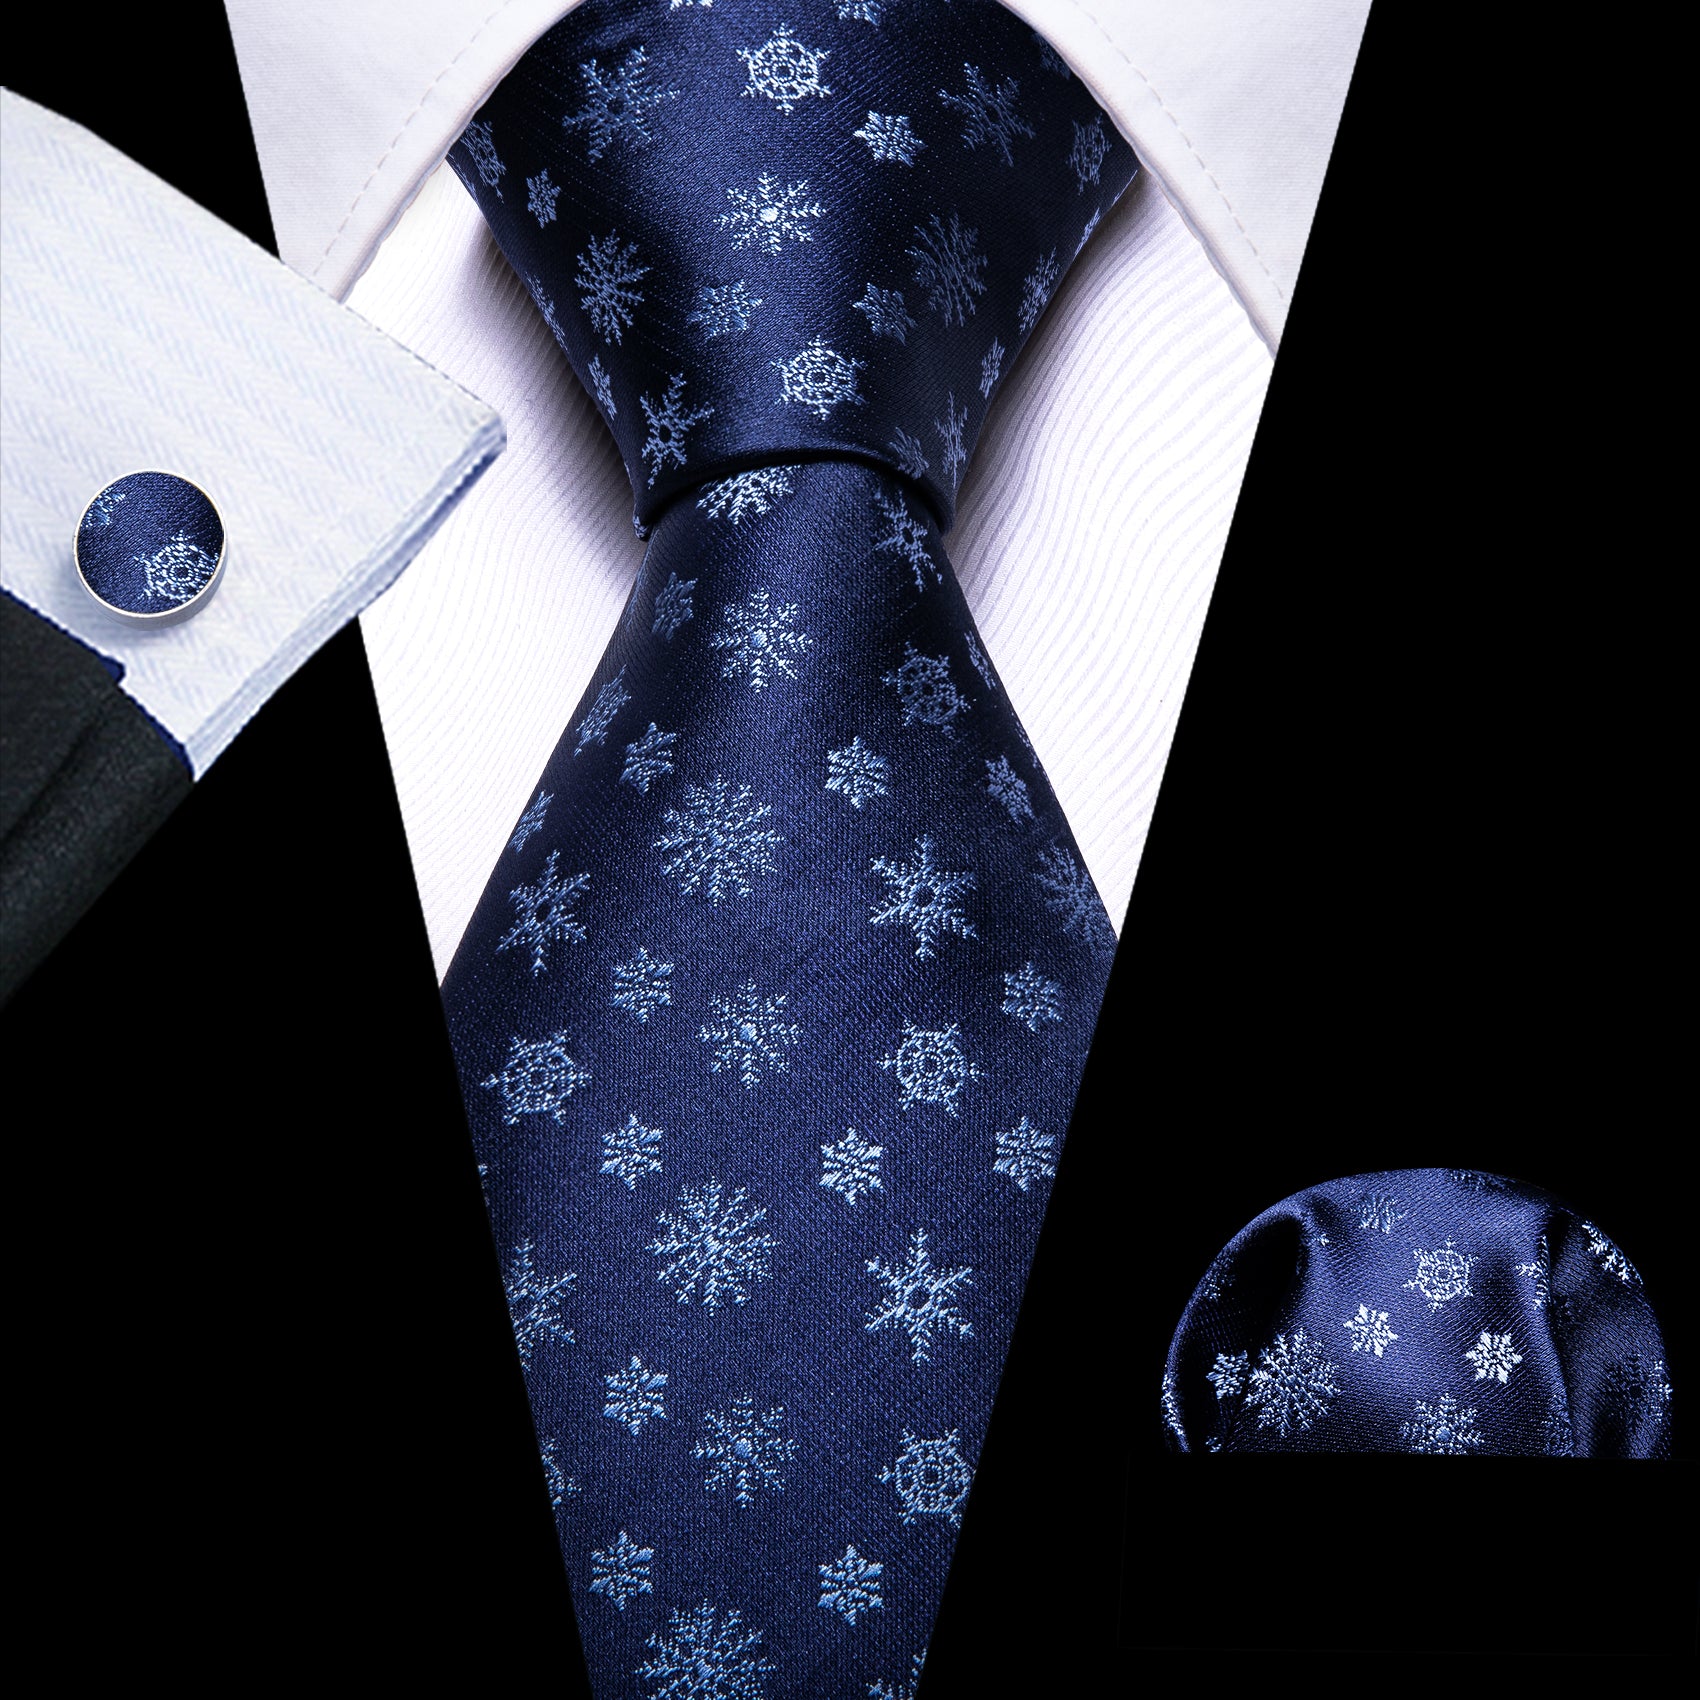 Navy Blue White Christmas Elements Tie Handkerchief Cufflinks Set